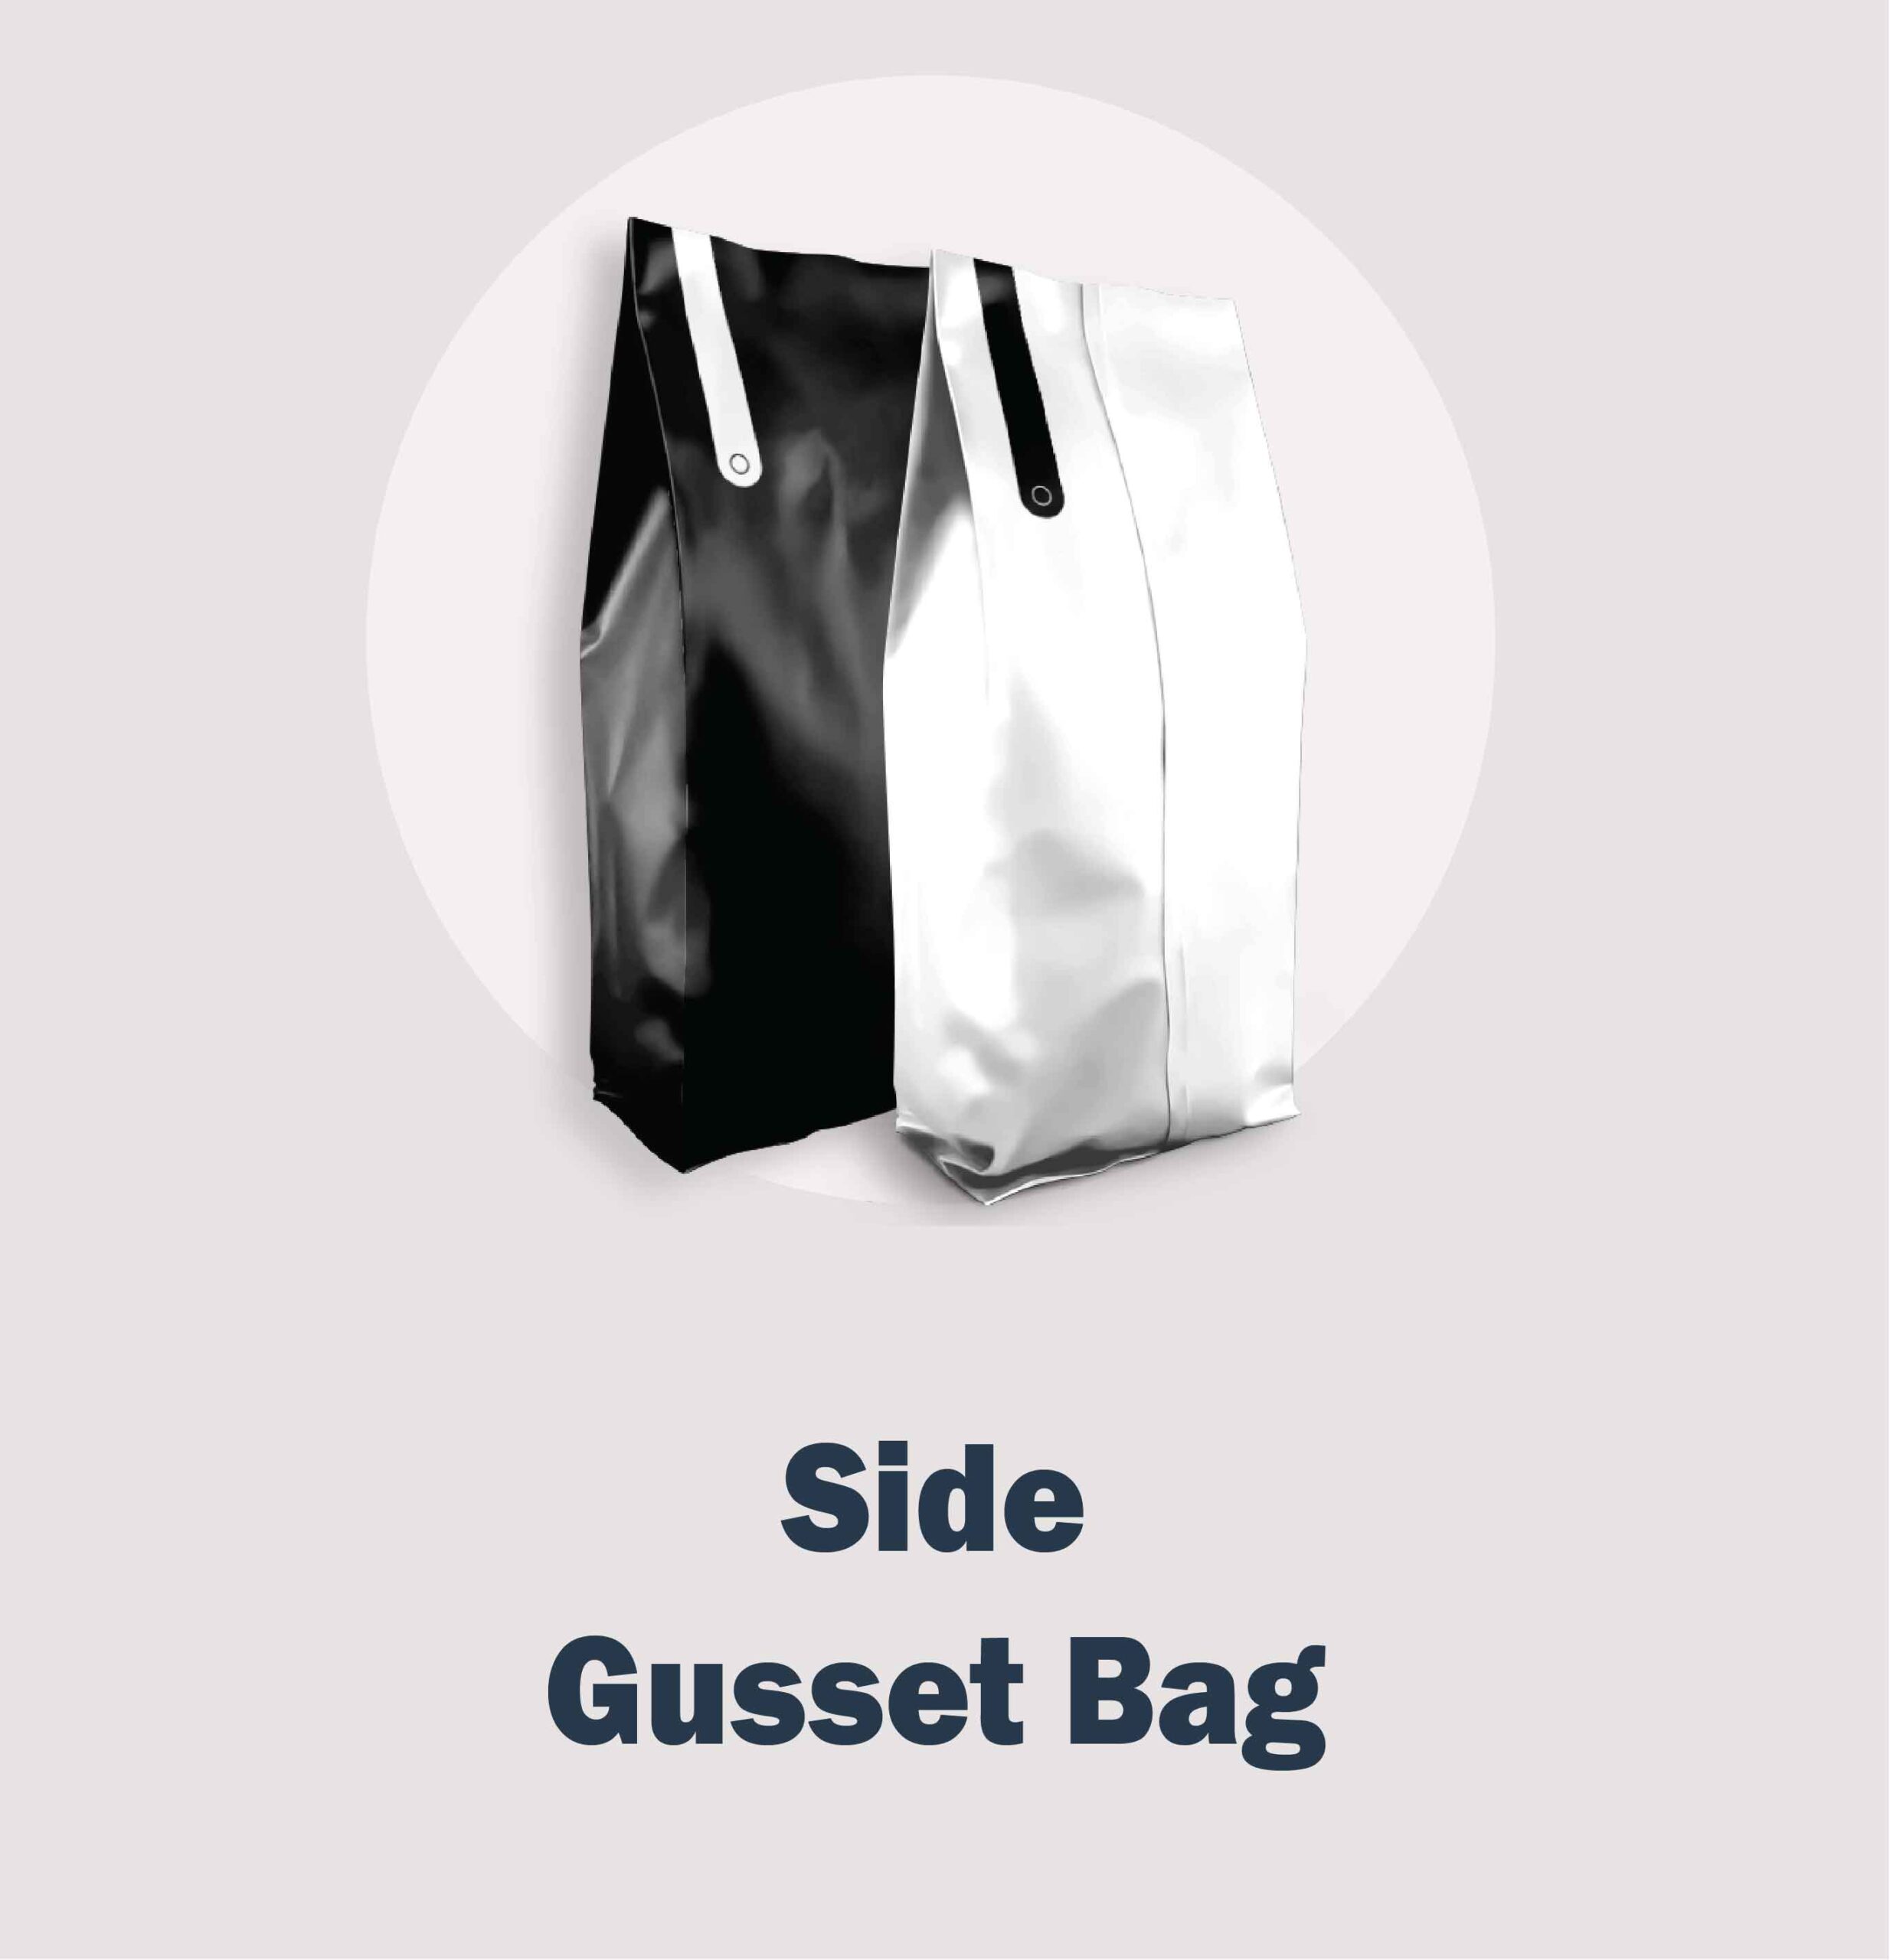 Side Gusset Bag